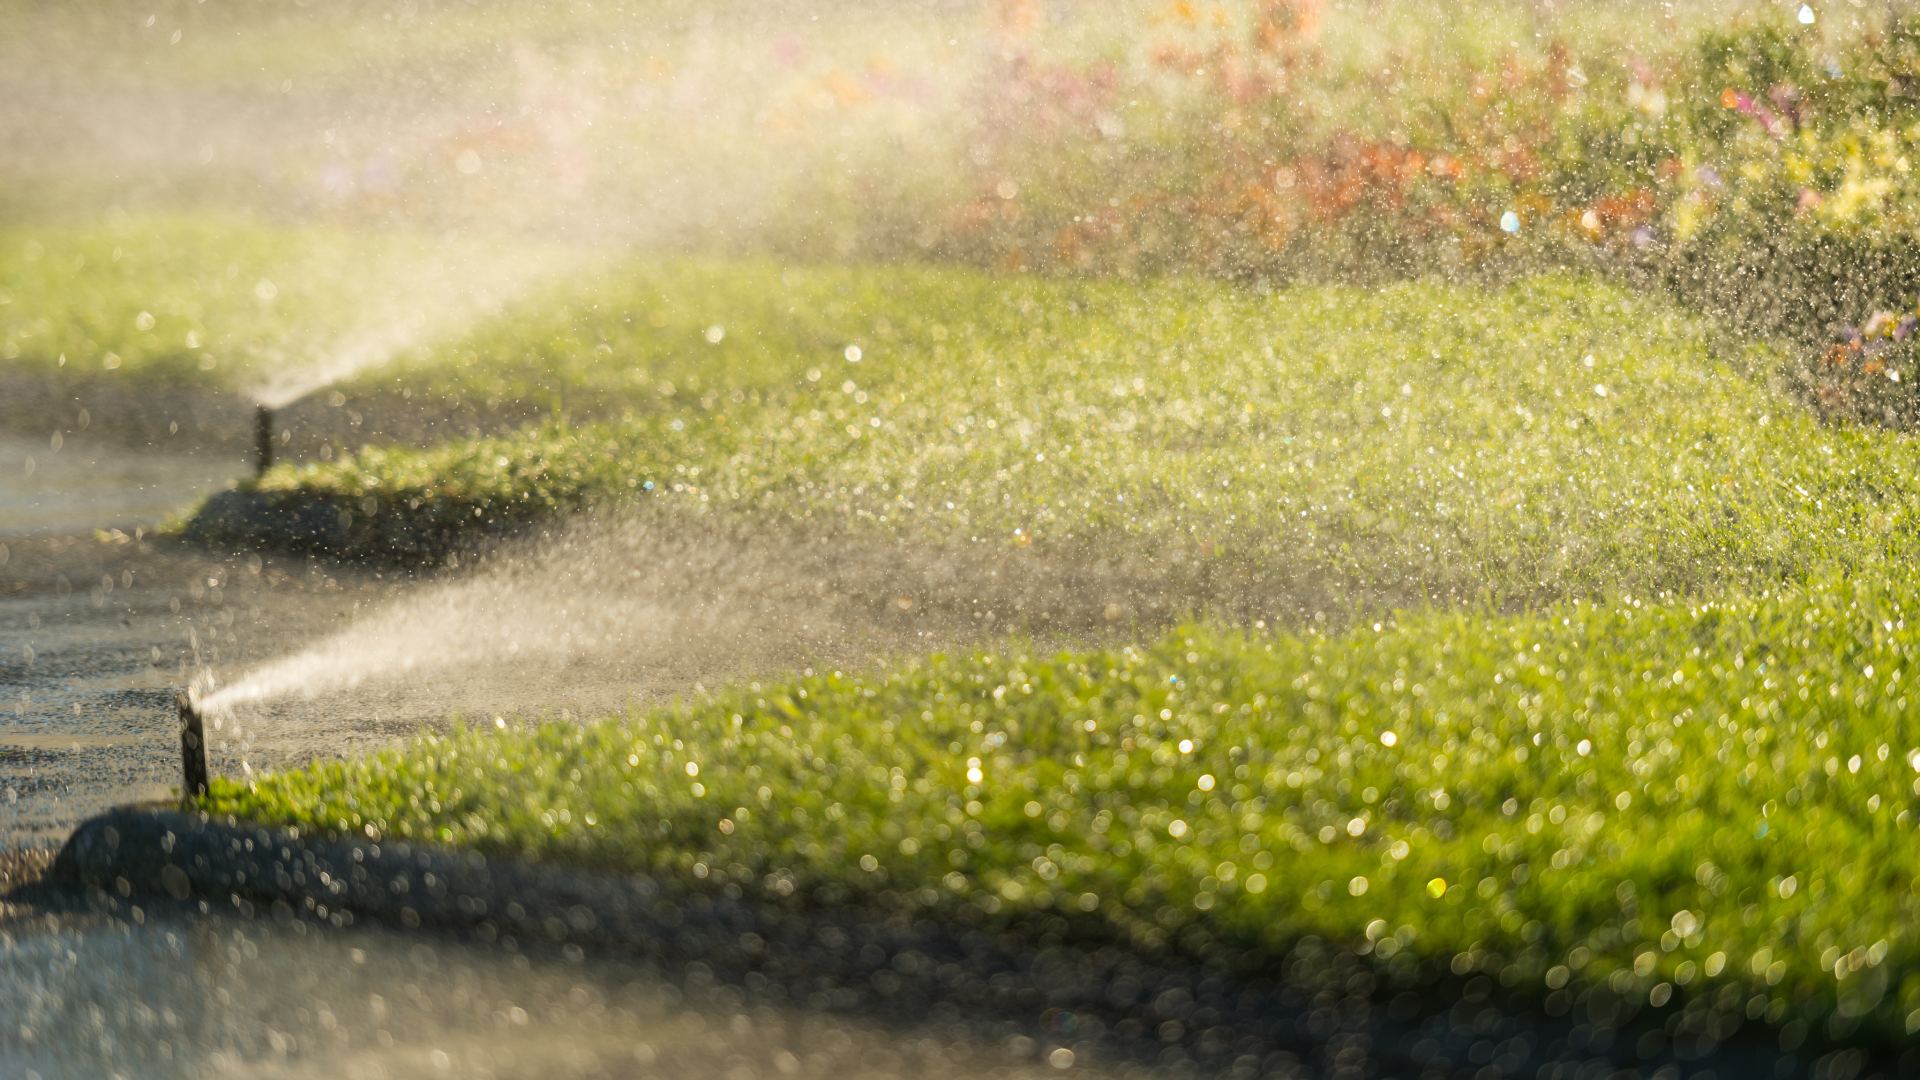 Sprinkler system watering lawn in Sachse, TX.